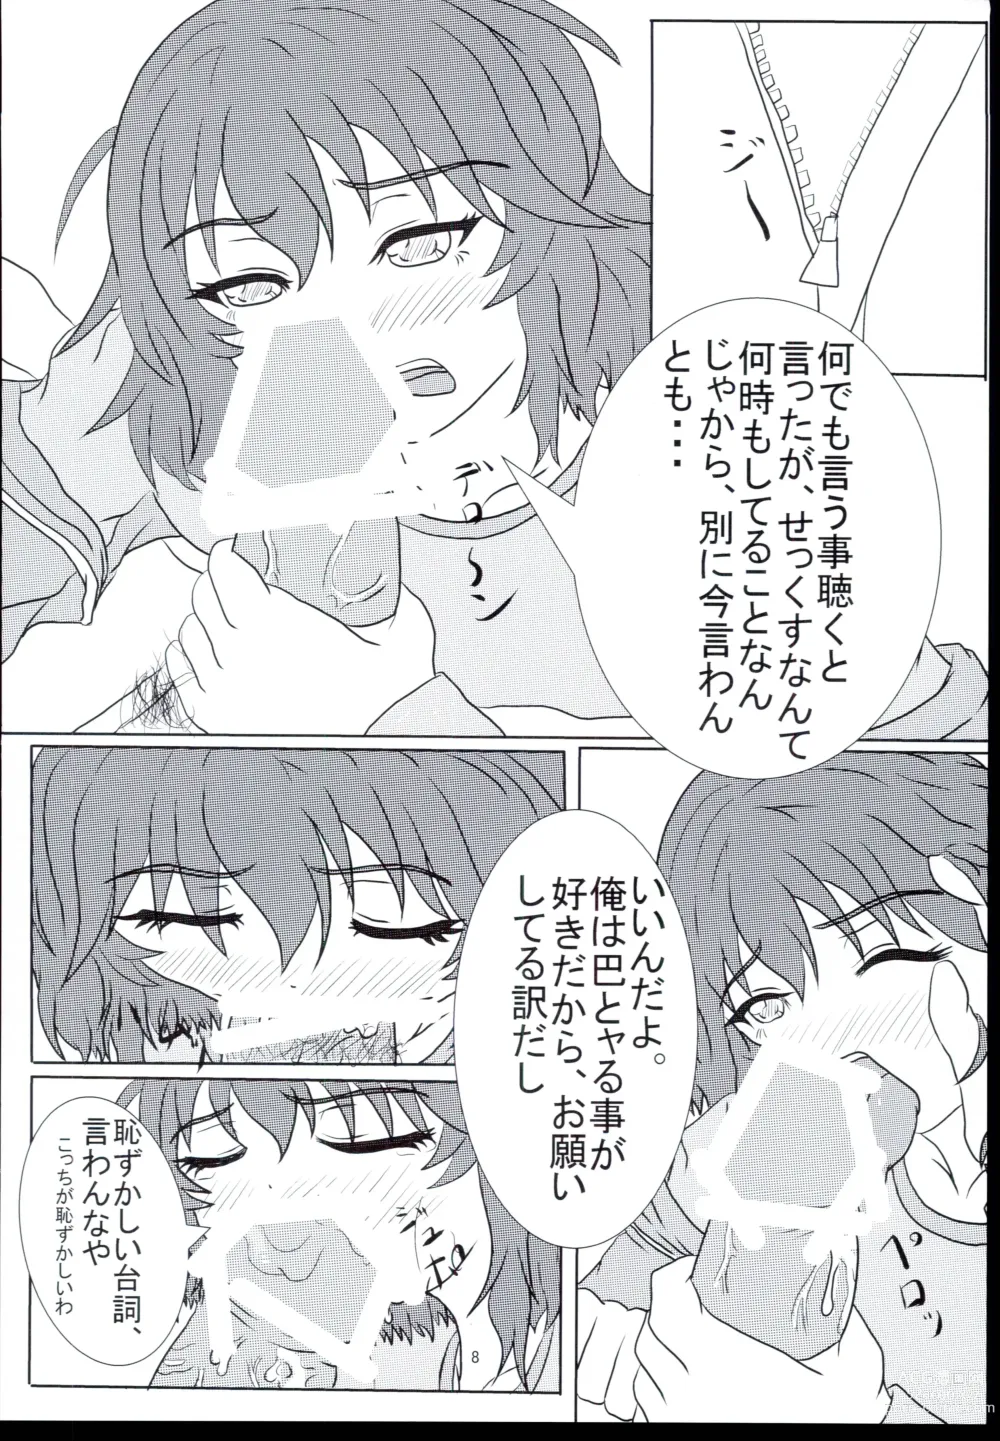 Page 8 of doujinshi Ikkyoku Yubi-an ka?